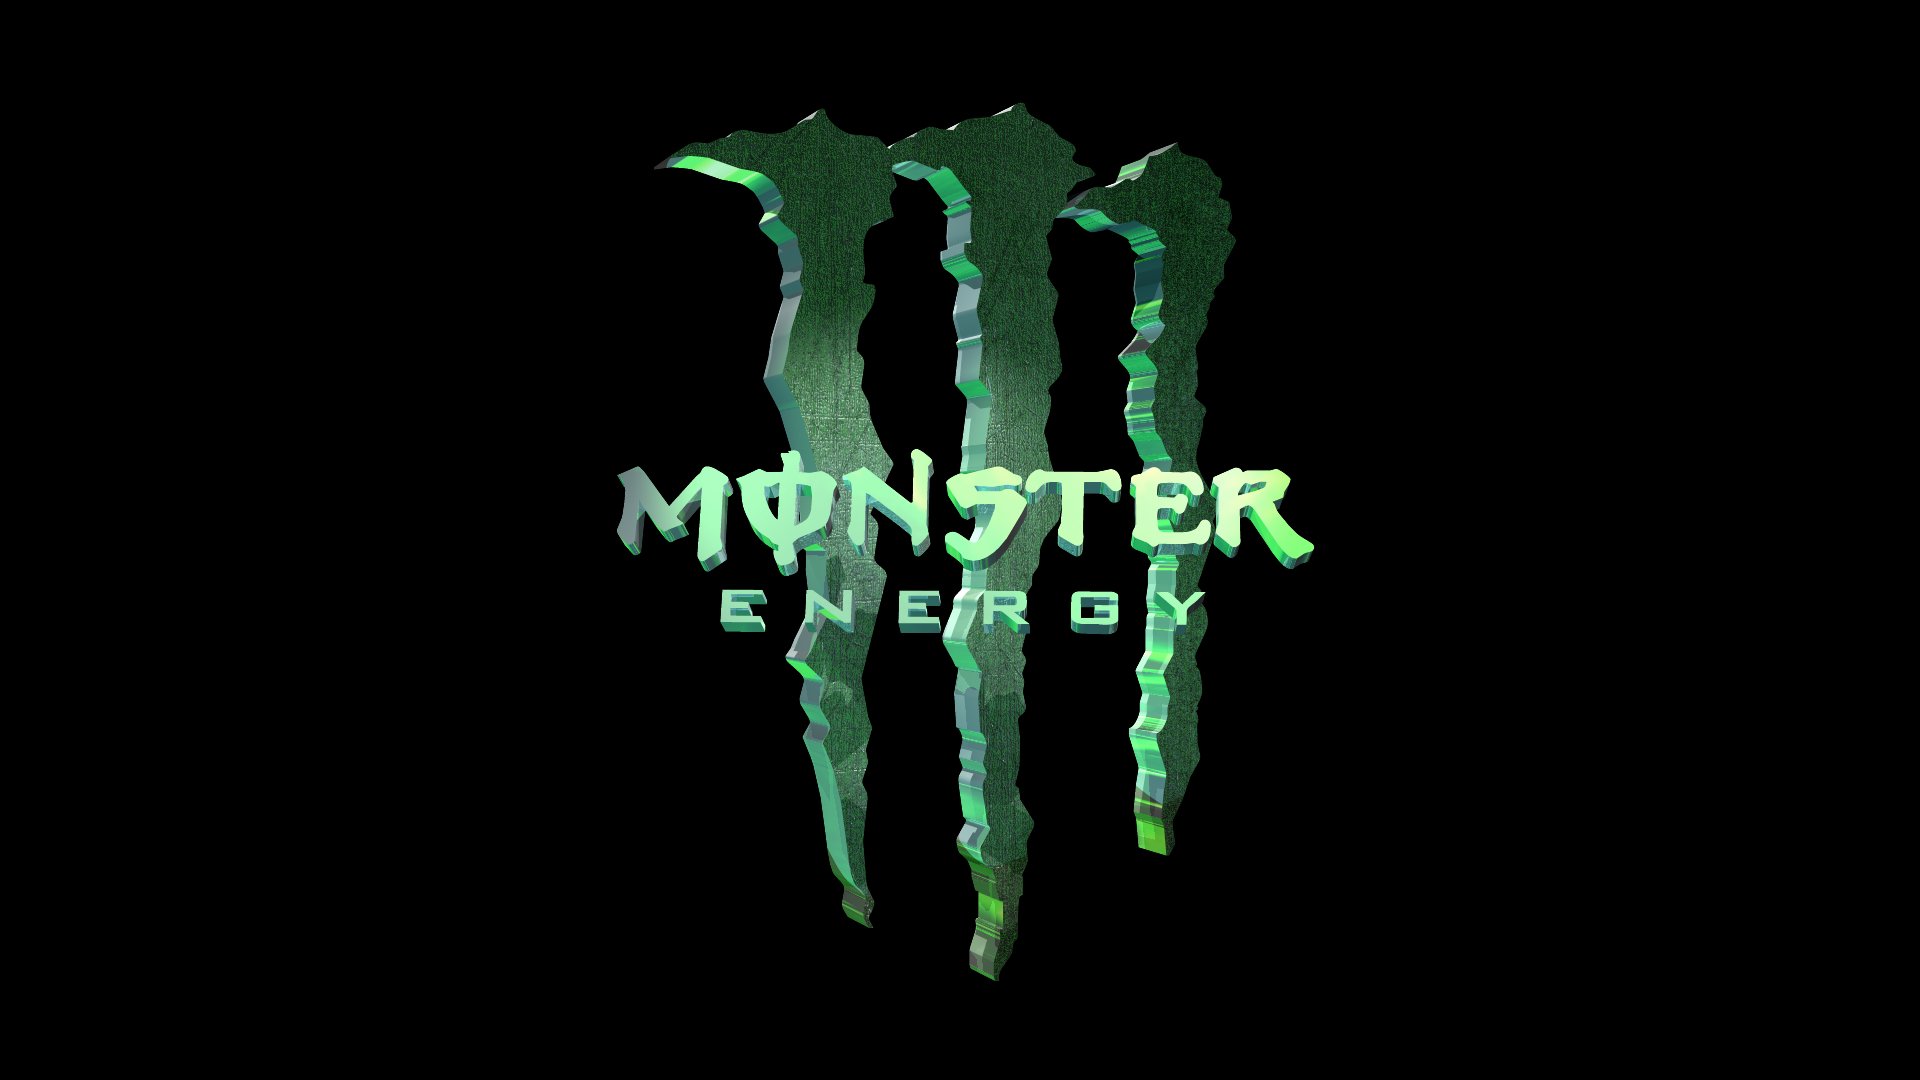 3D Monster Energy   MONSTER ENERGY DRINK Wallpaper 23885321 1920x1080